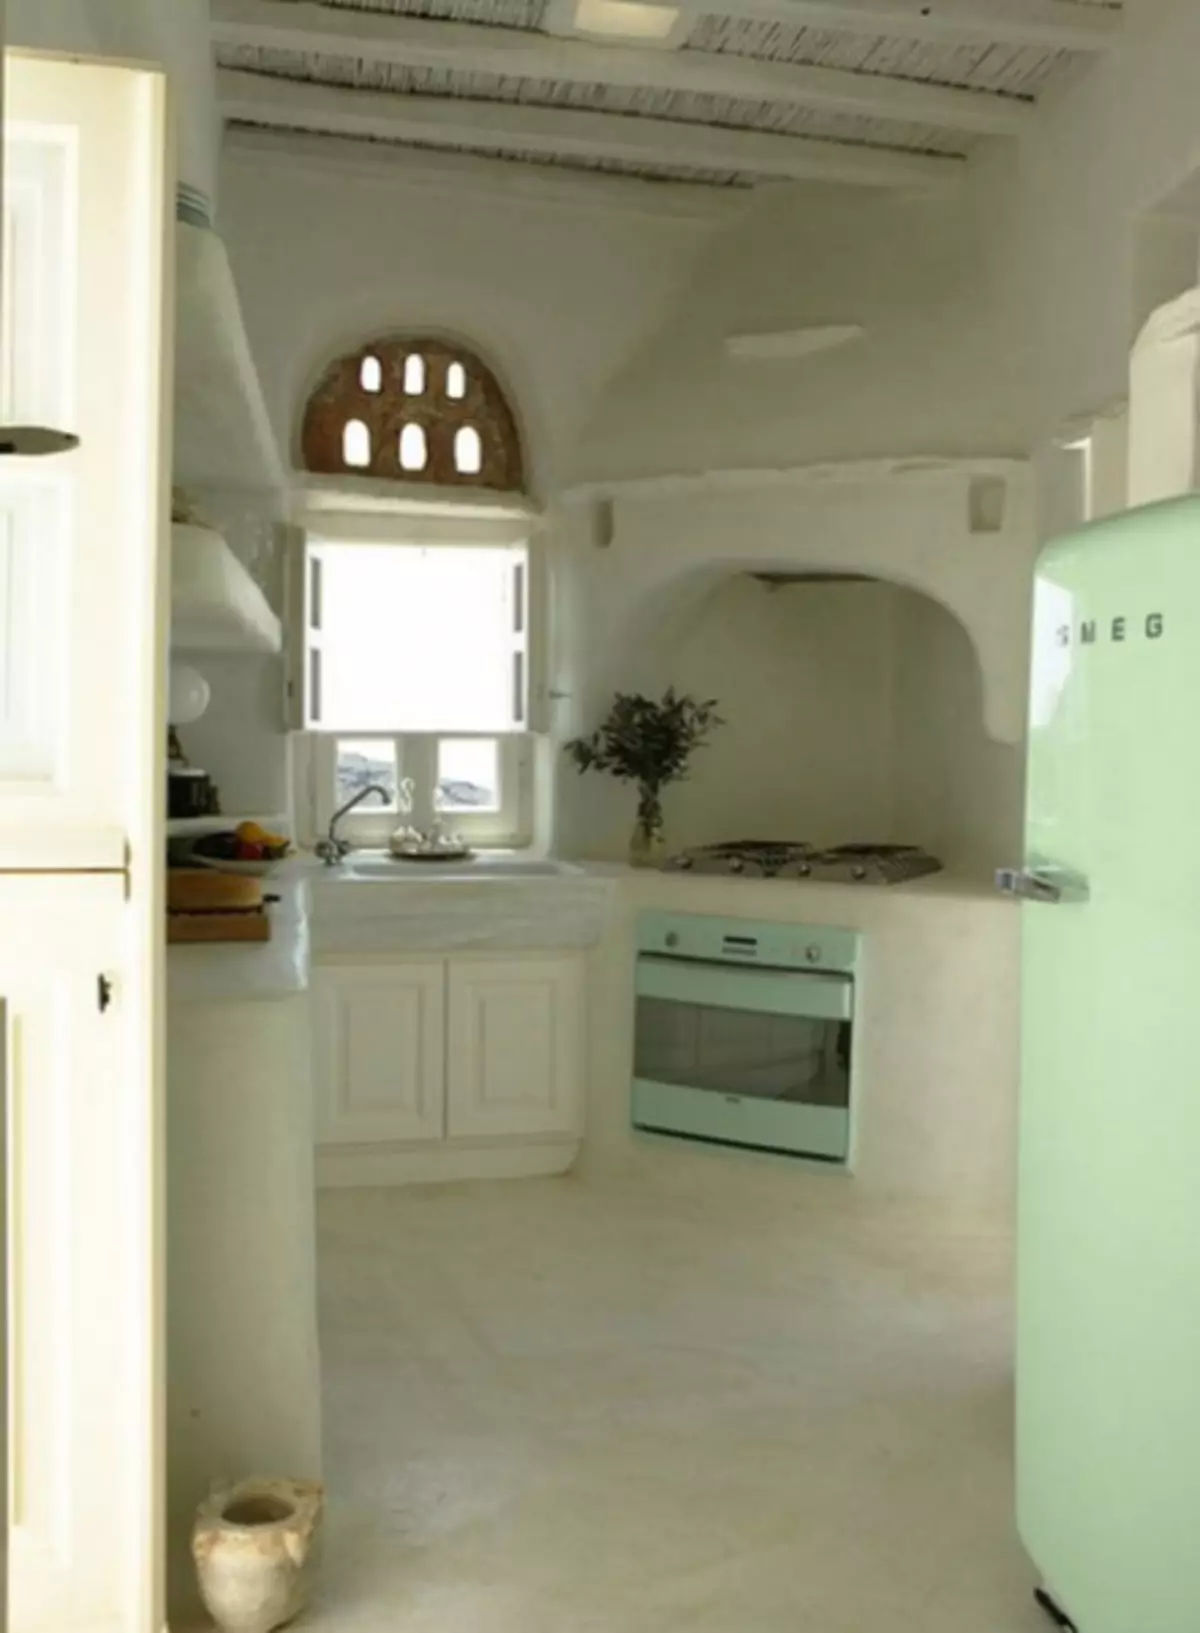 ثلاجة مشرقة في المطبخ الداخلية (45 صورة)